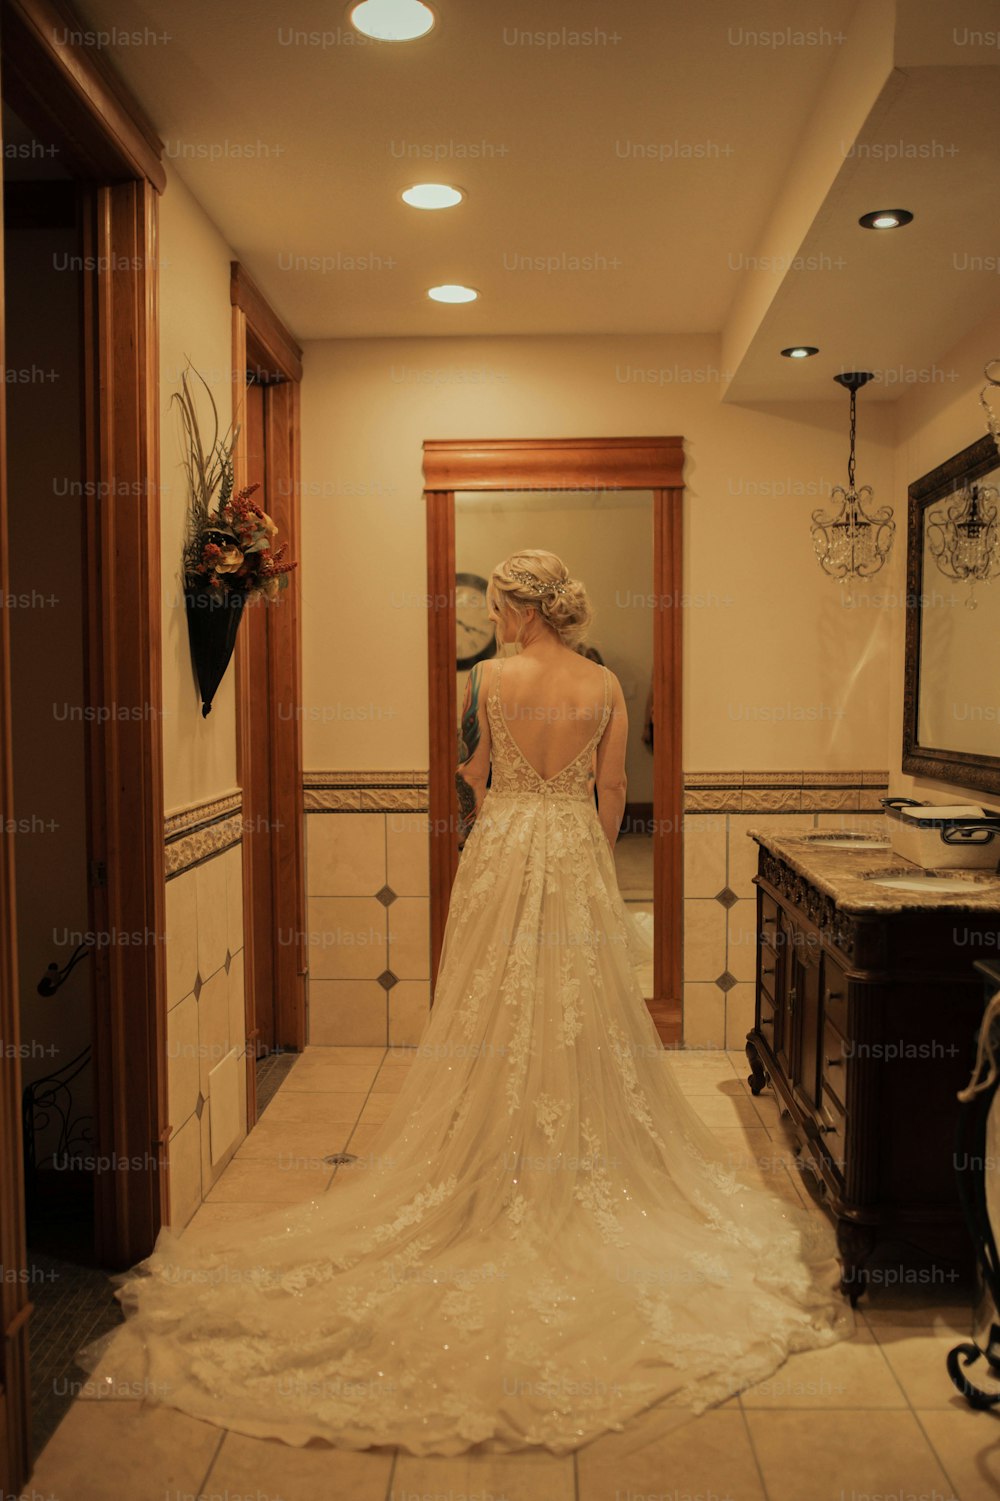 웨딩드레스를 입고 거울 앞에 서 있는 여자